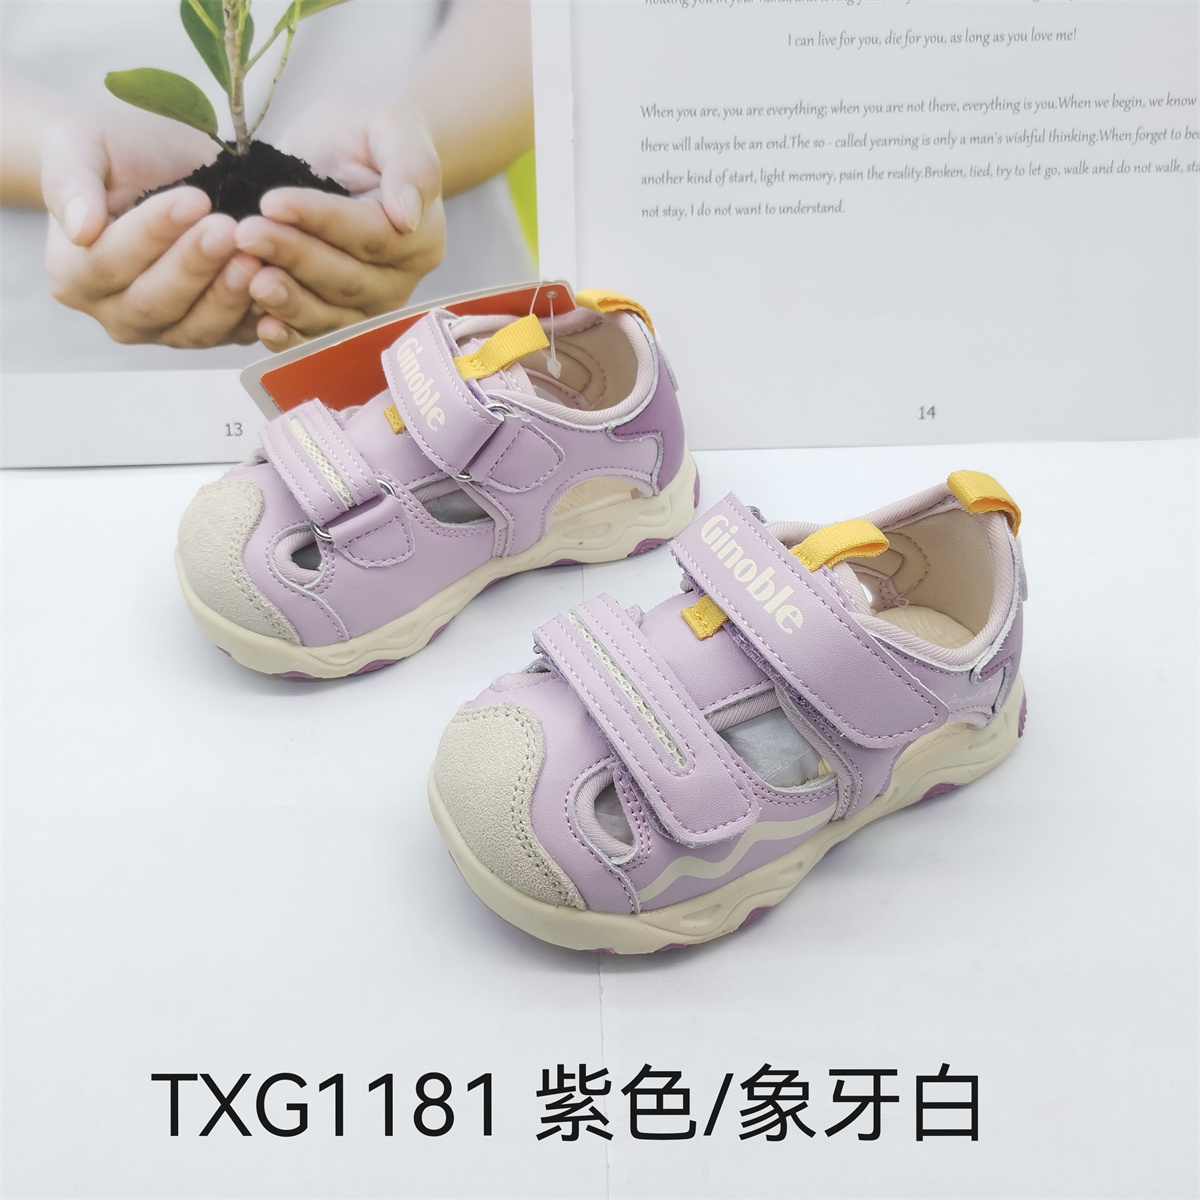 基诺浦夏款机能鞋凉鞋男童女童运动鞋跑步鞋TXG1181.1182.1183